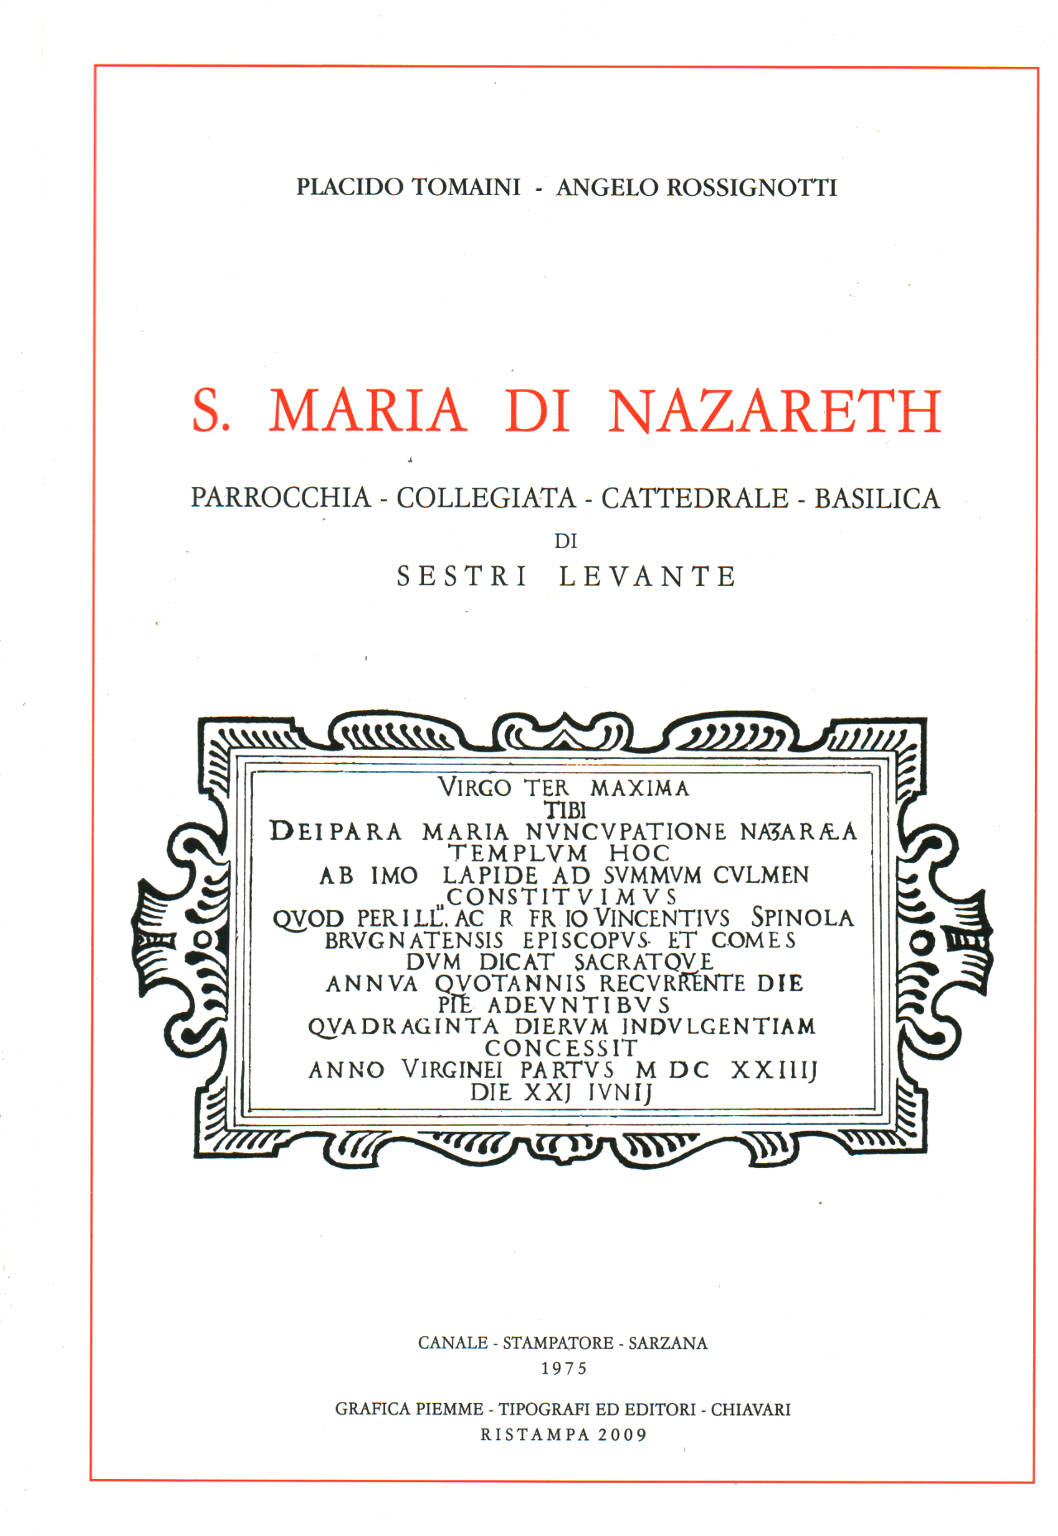 S.Maria di Nazareth, Placido Tomaini Angelo Rossignotti